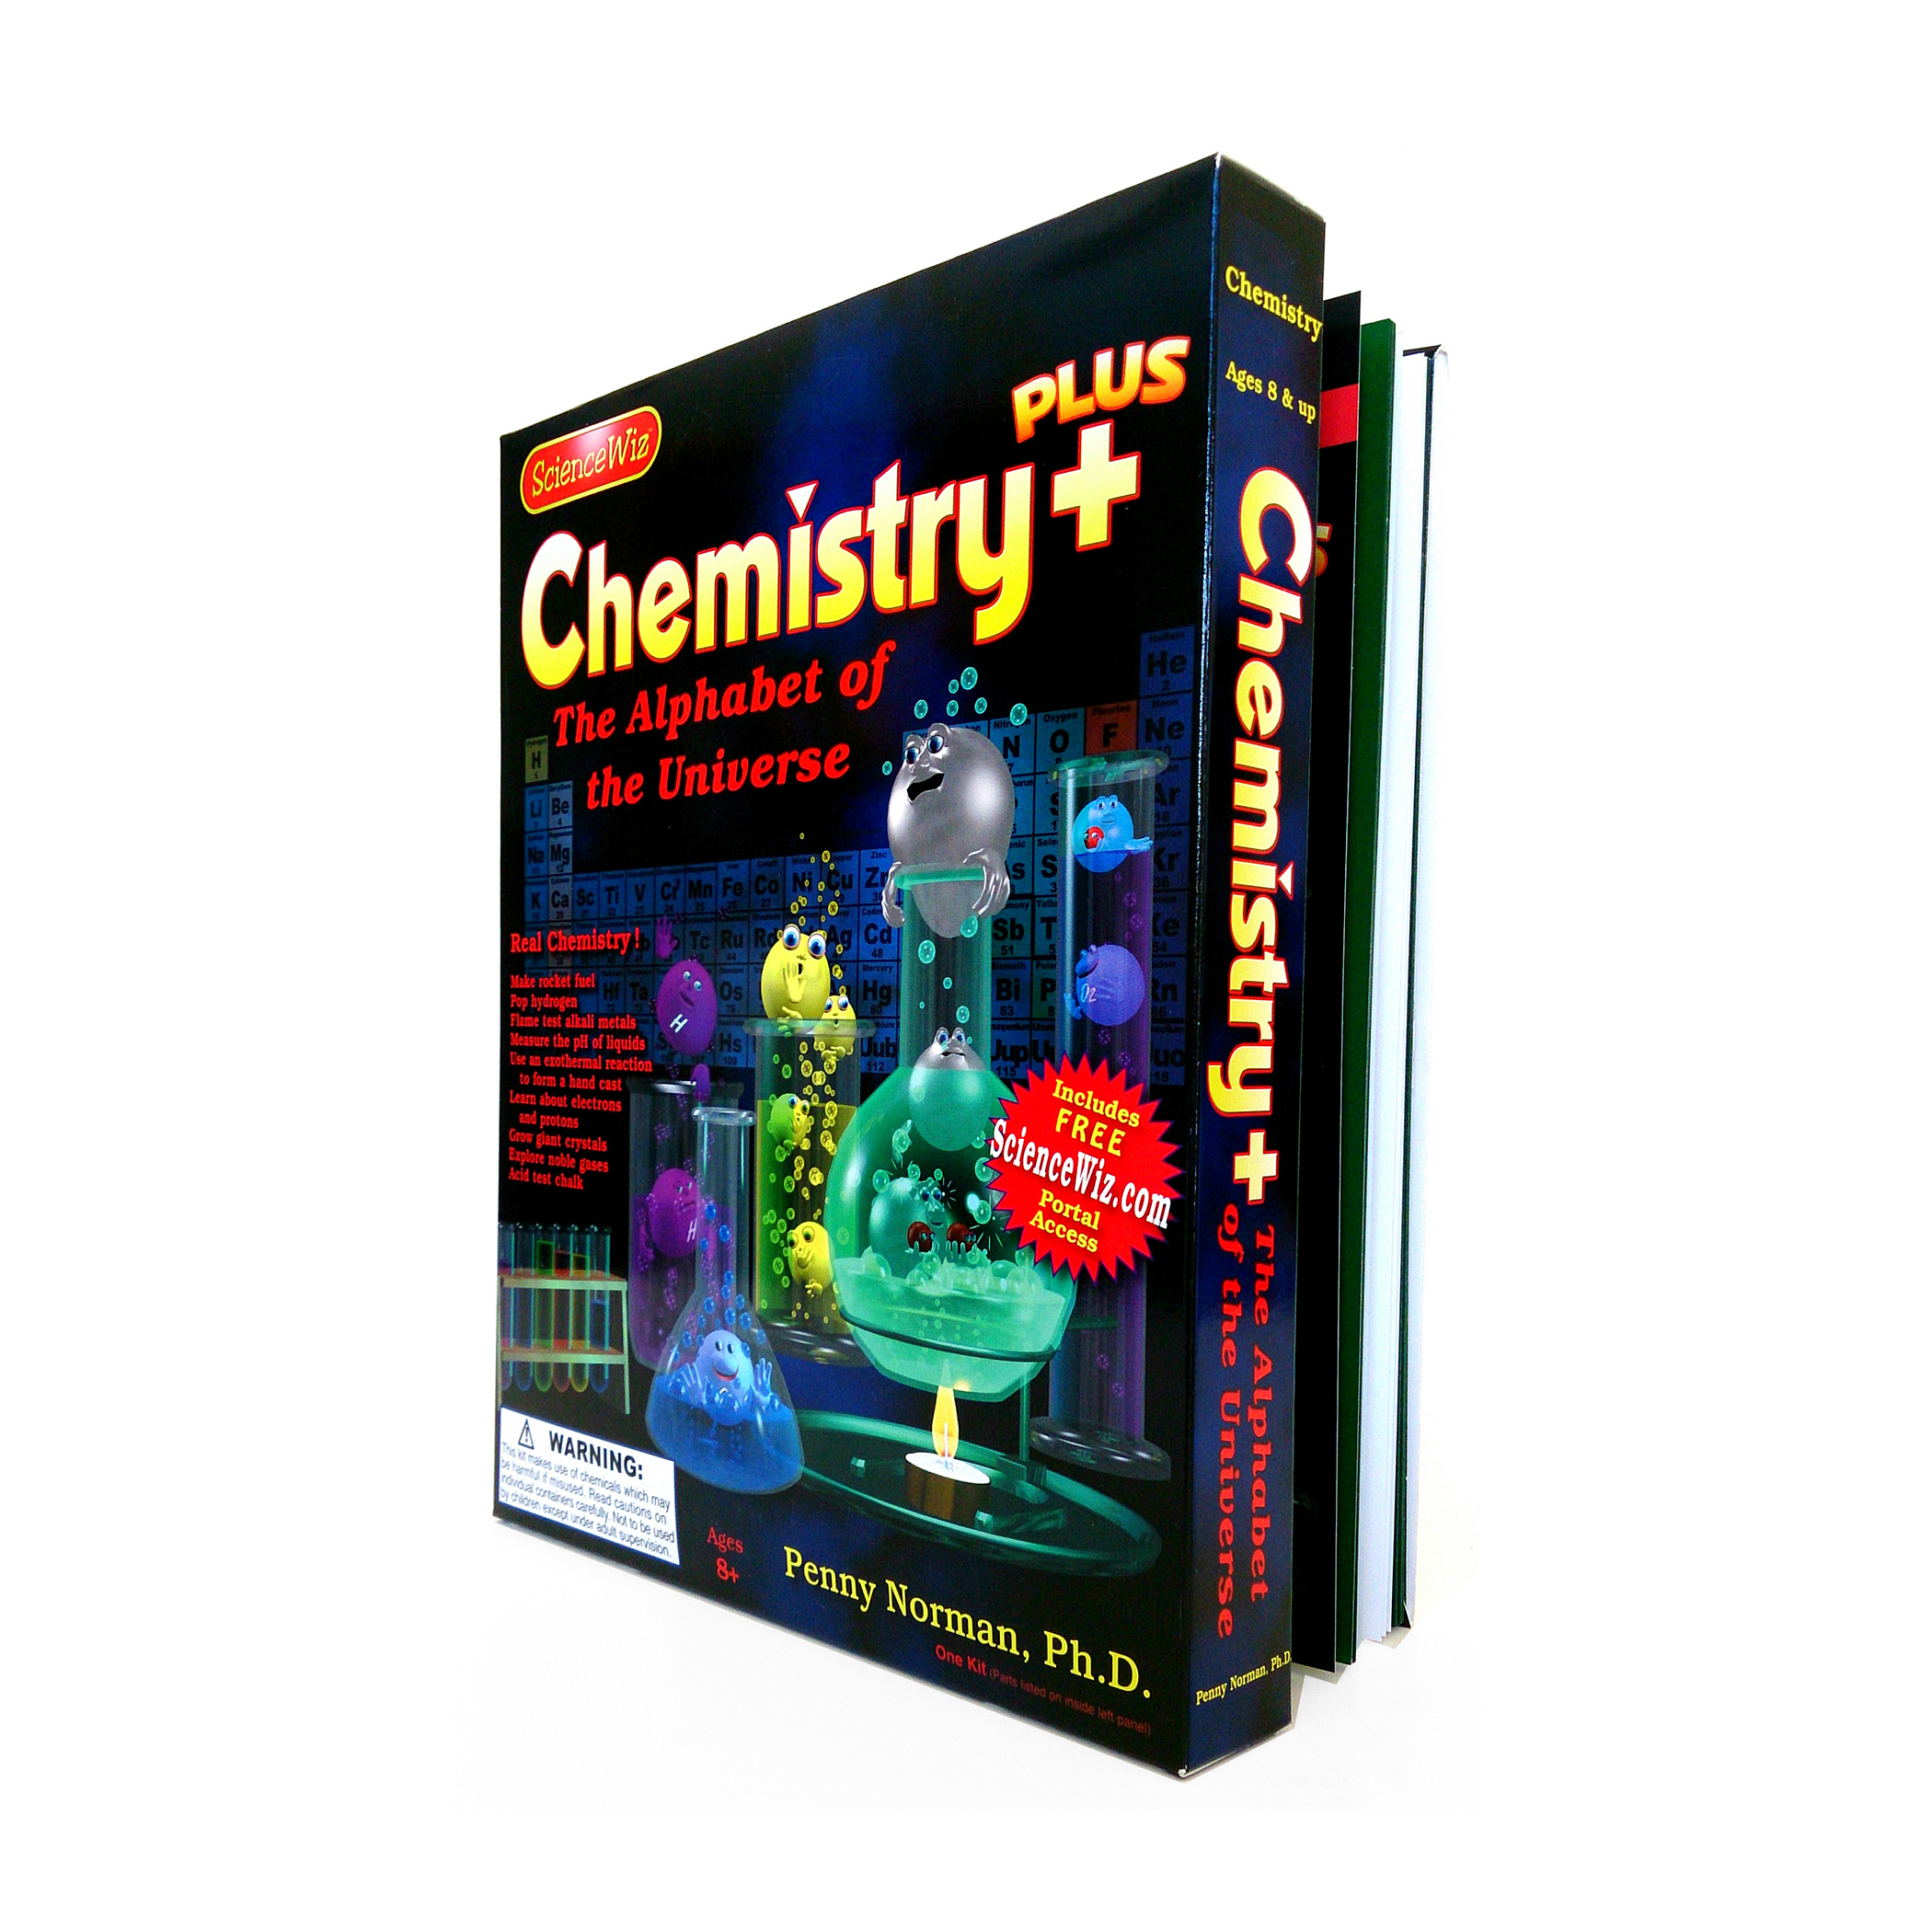 ScienceWiz Chemistry Plus Kit